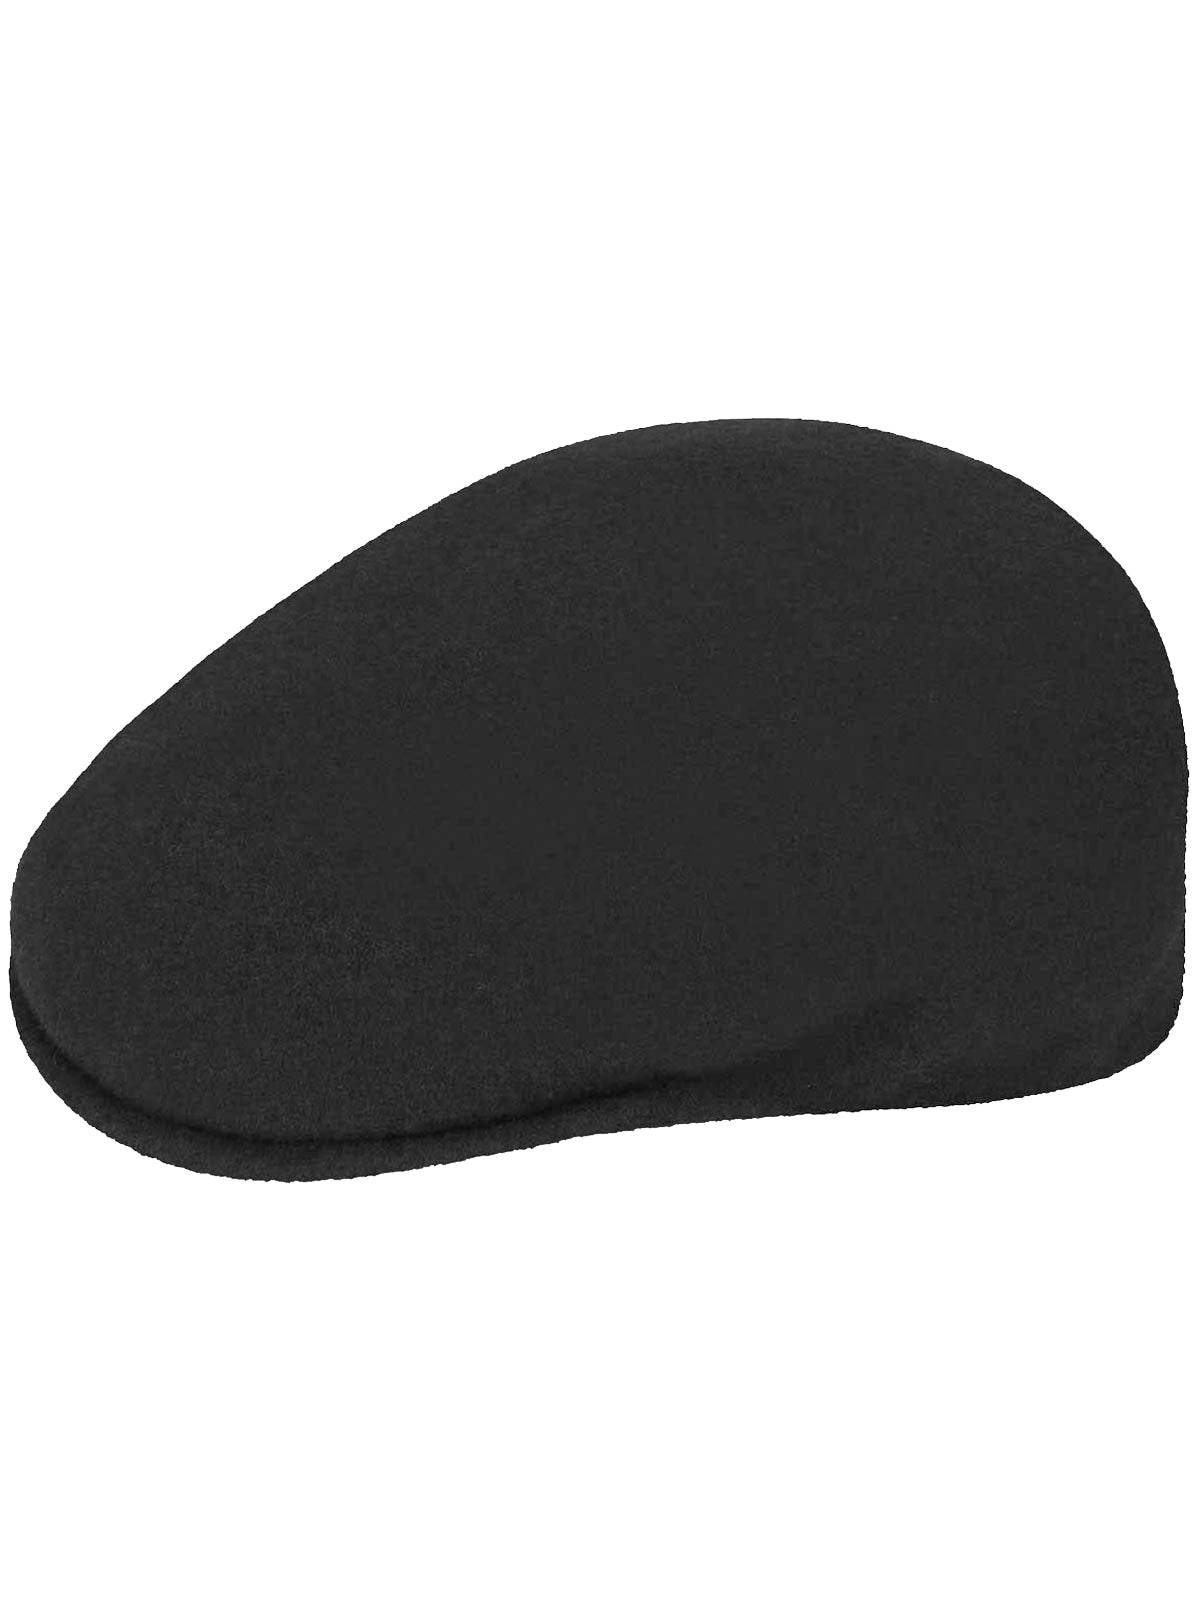 Kangol Wool 504 Cap in Black